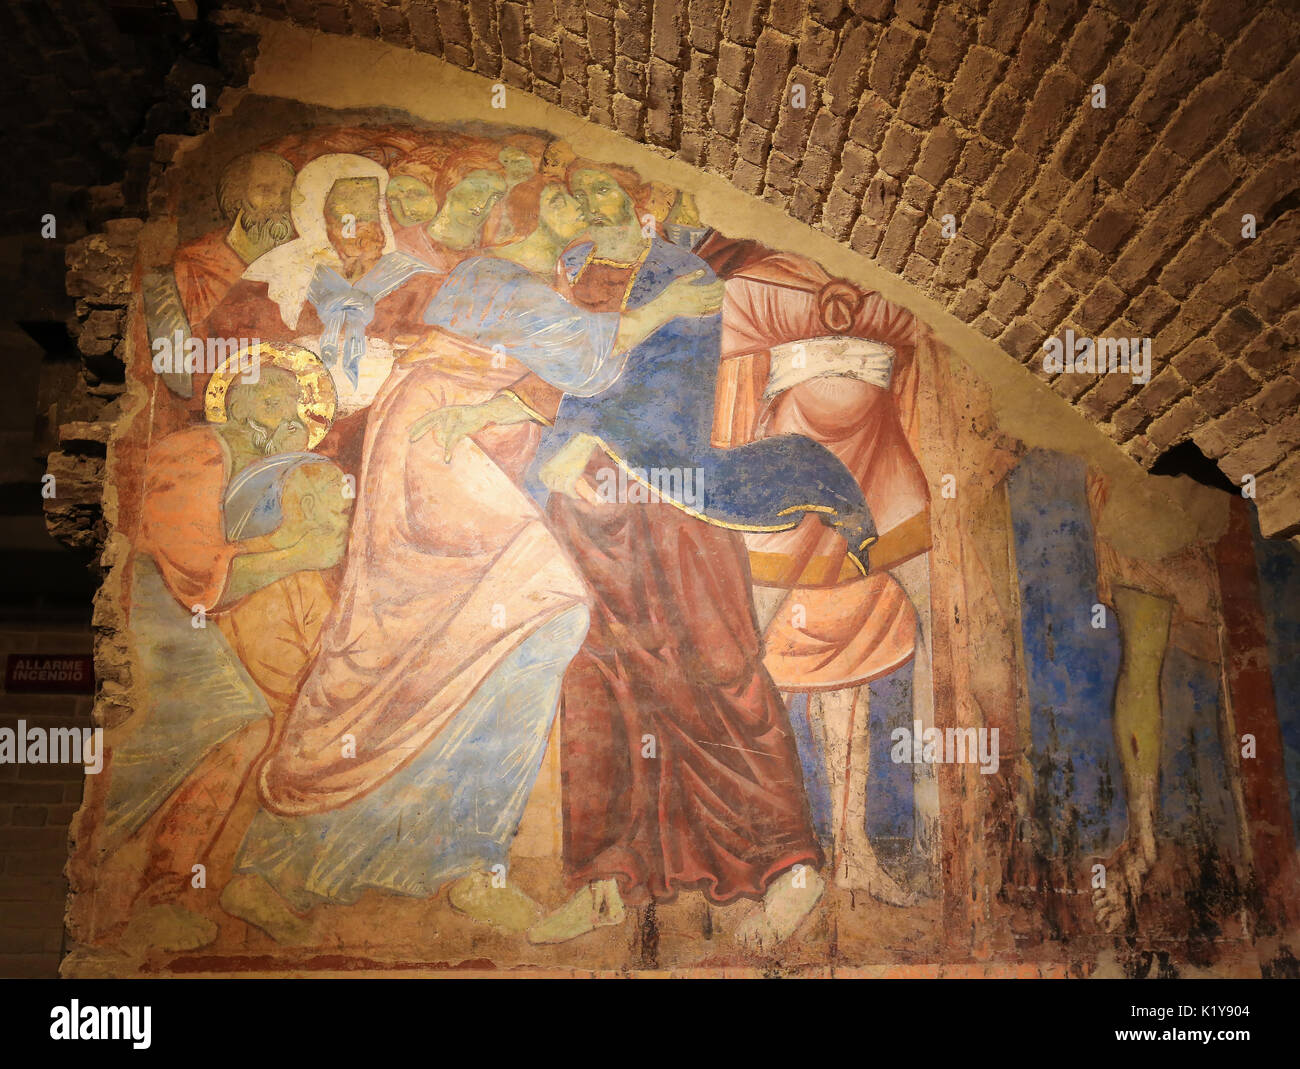 Fresque (1270) dans la crypte de la Cathédrale de Sienne à Sienne, Toscane, Italie, représentant Judas Iscariot trahissant Jésus avec un baiser dans le jardin d'Gethsema Banque D'Images